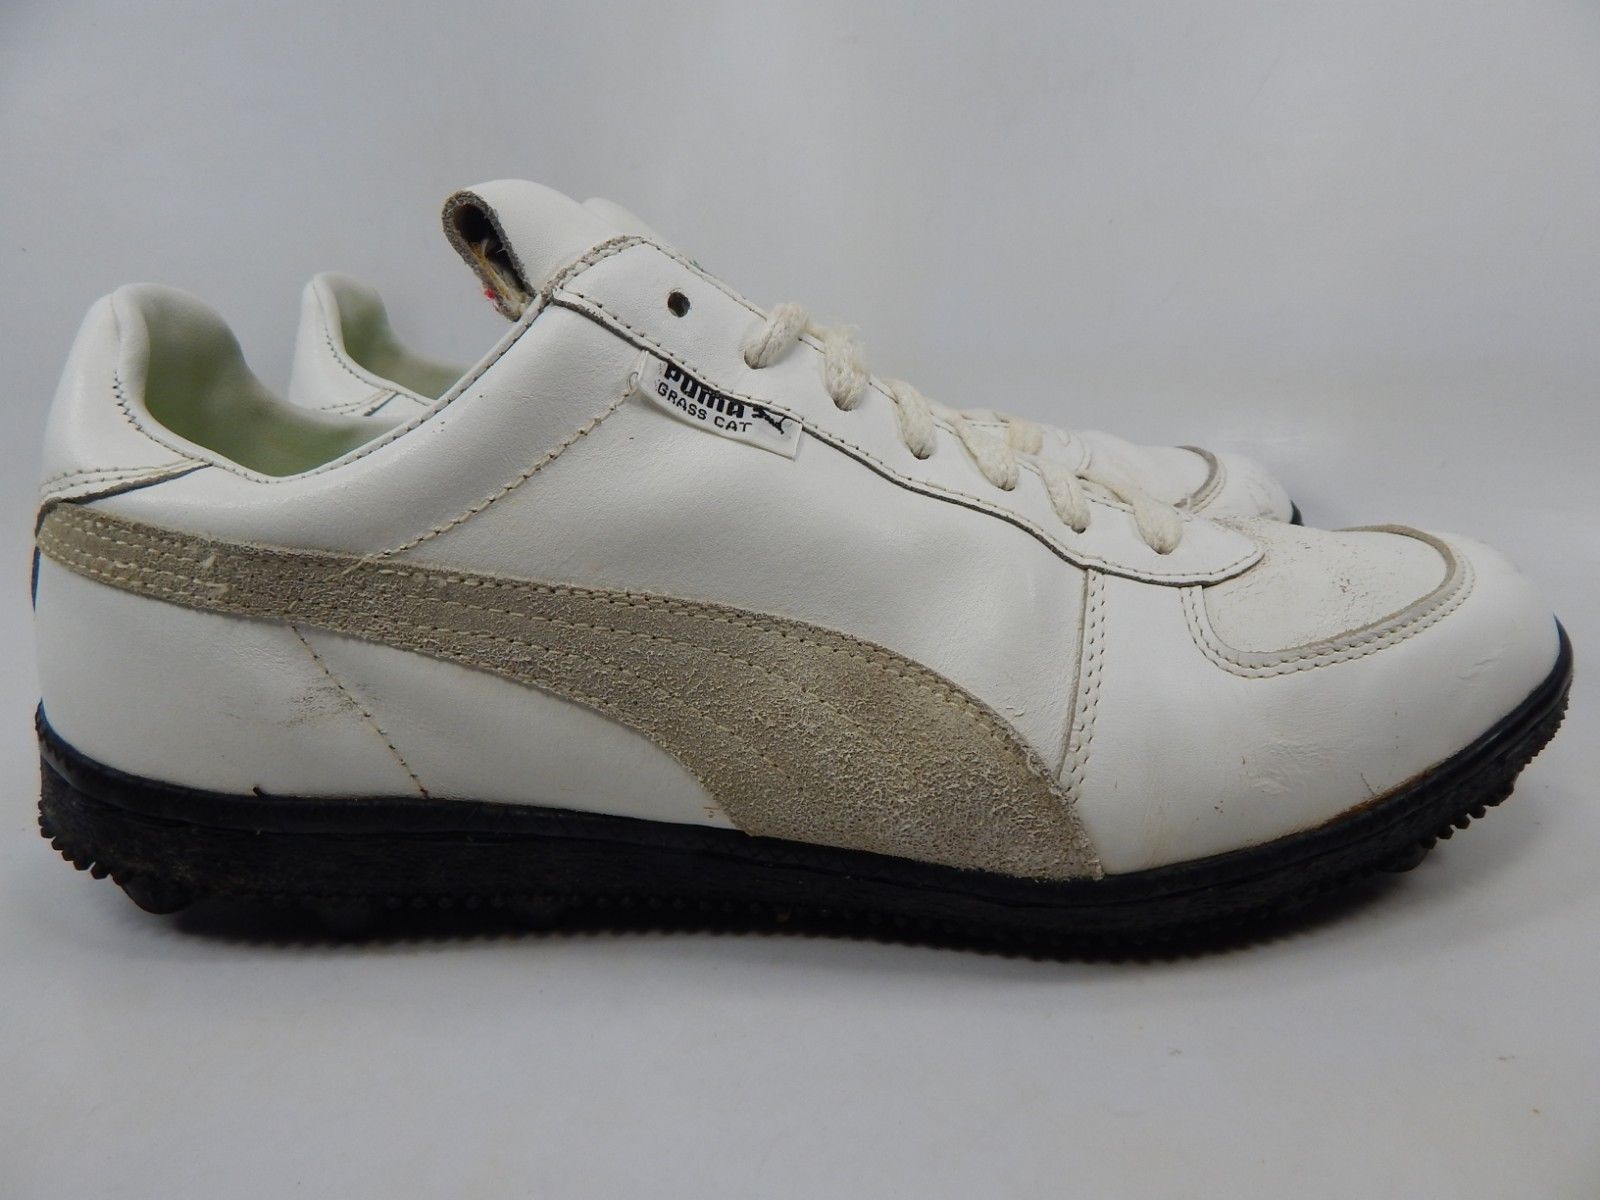 Puma Grass Cat Size US 13 M (D) EU 47 Men's Grass Shoes Cleats White - Men